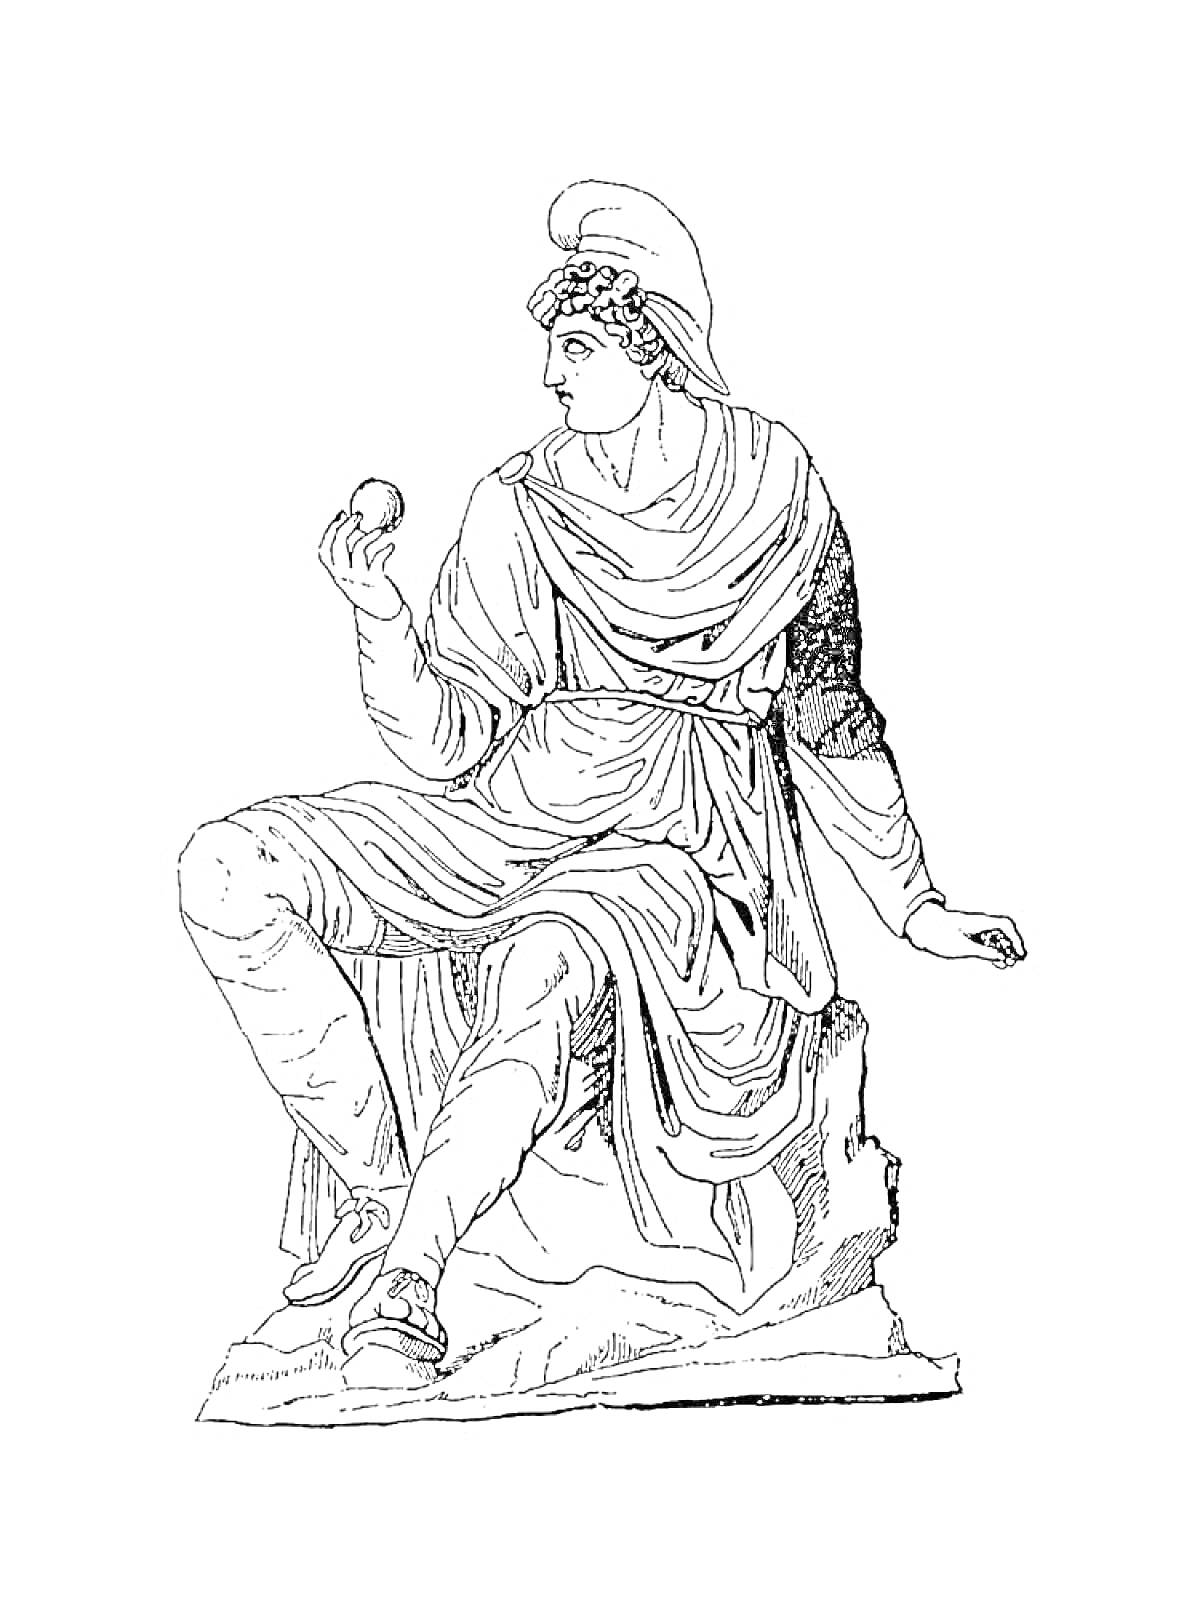 Божественное существо в древнегреческом одеянии сидит с яблоком в руке